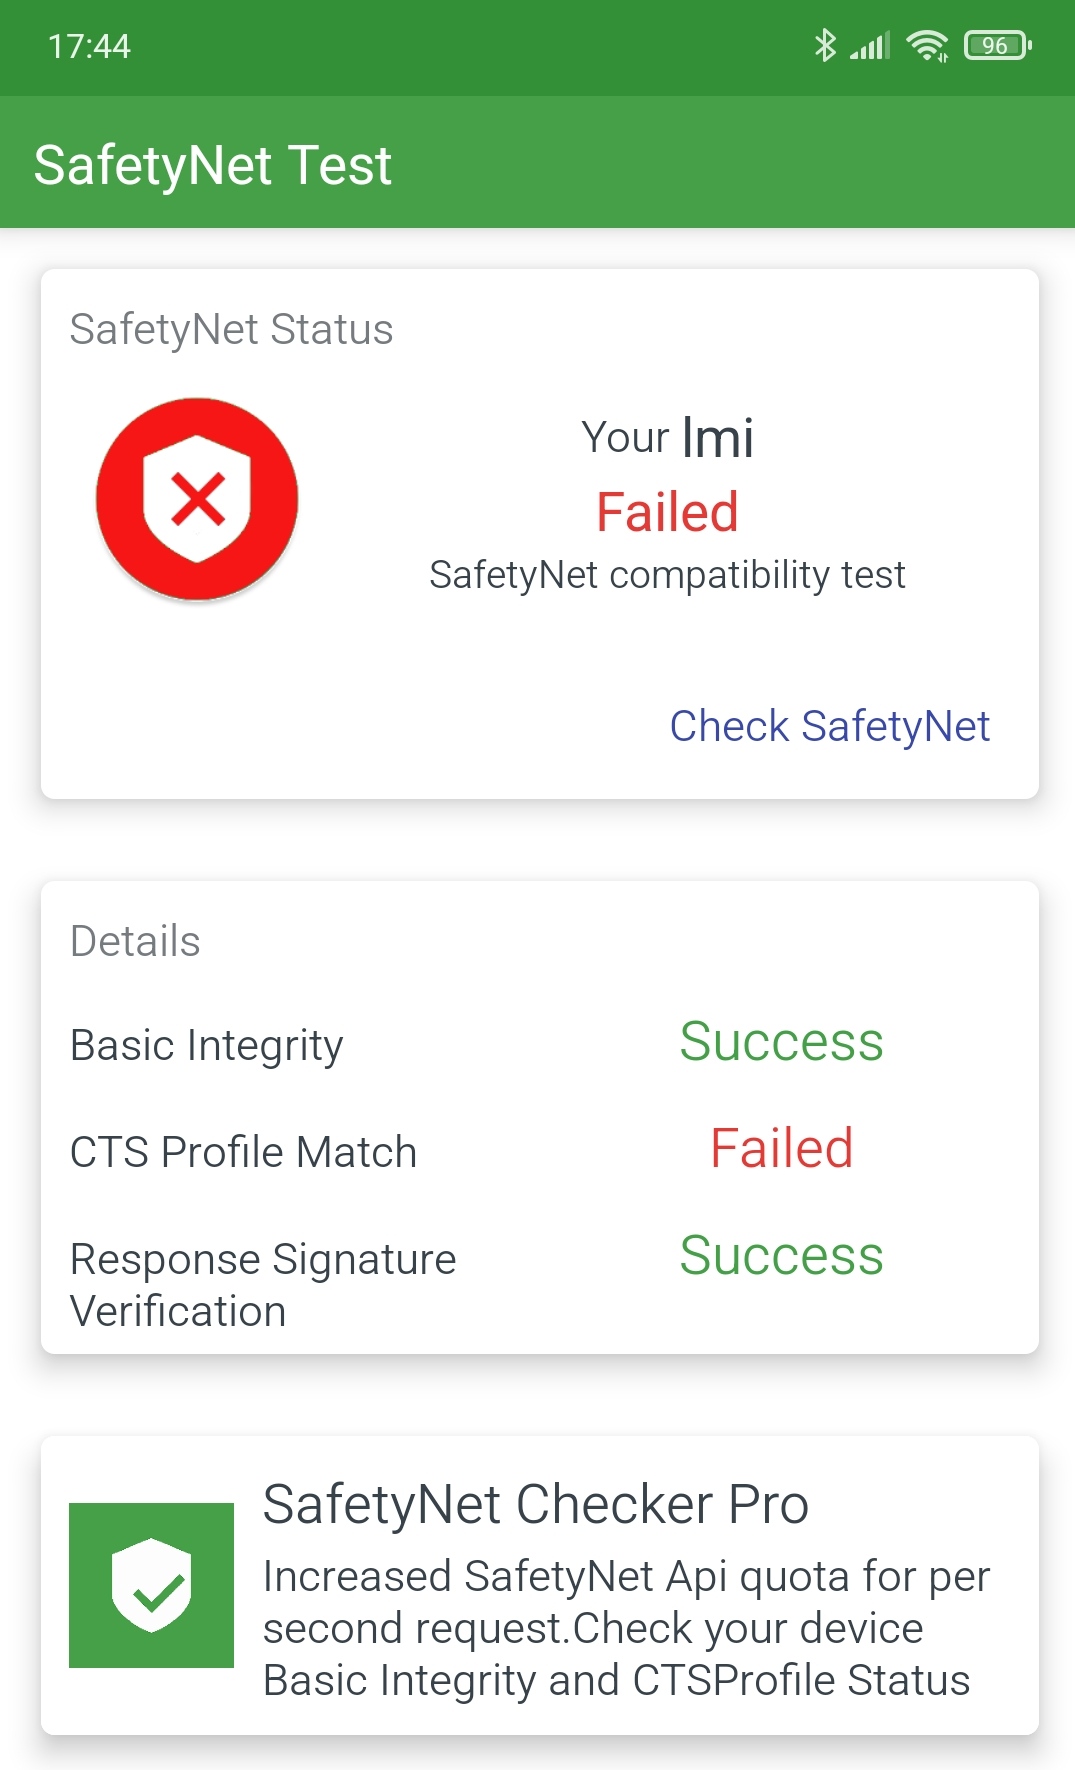 Cts profile match failed